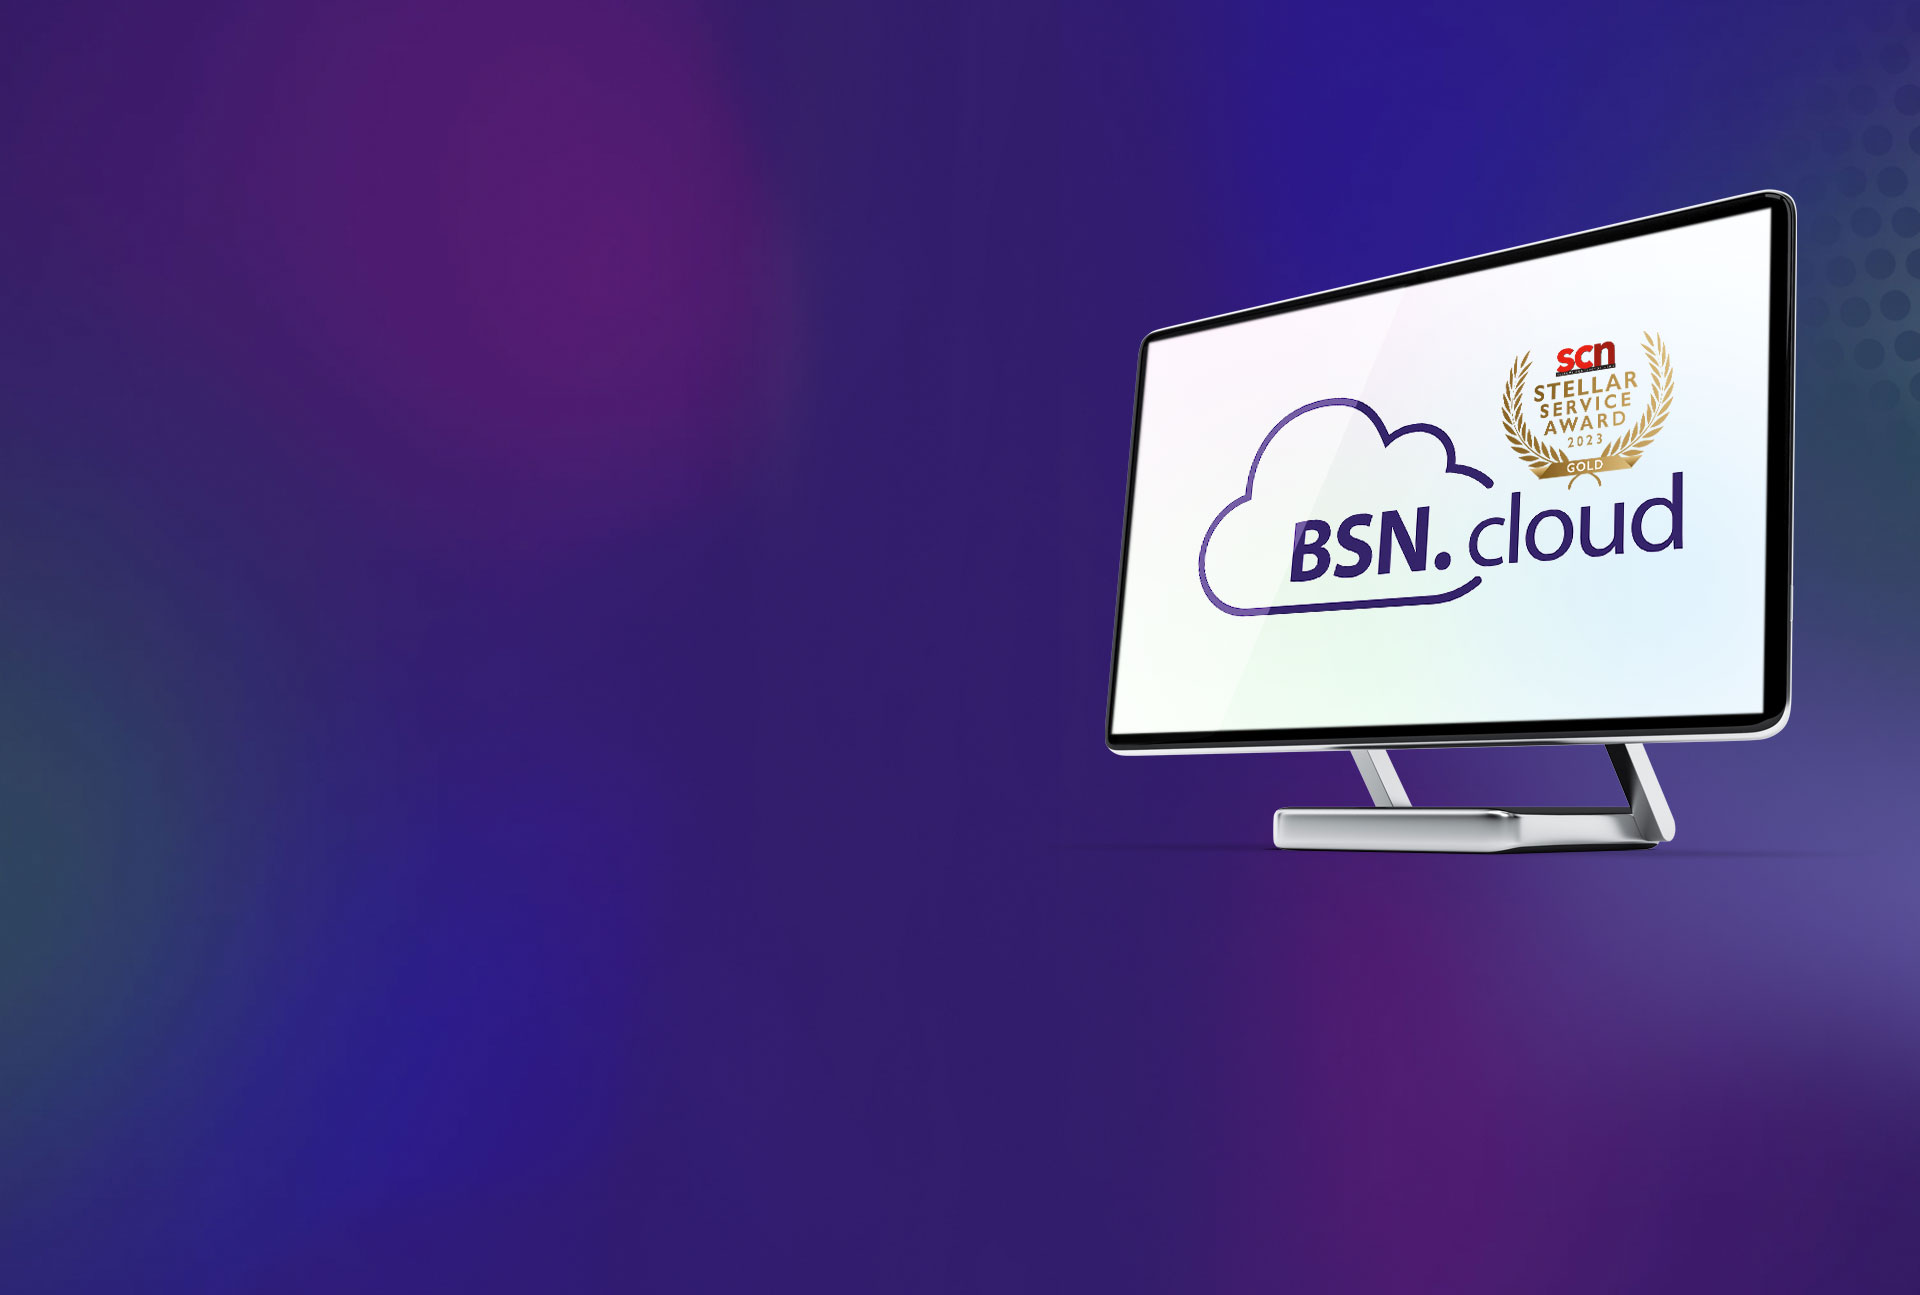 BSN.cloudのロゴを表示するモニターのヒーロー画像